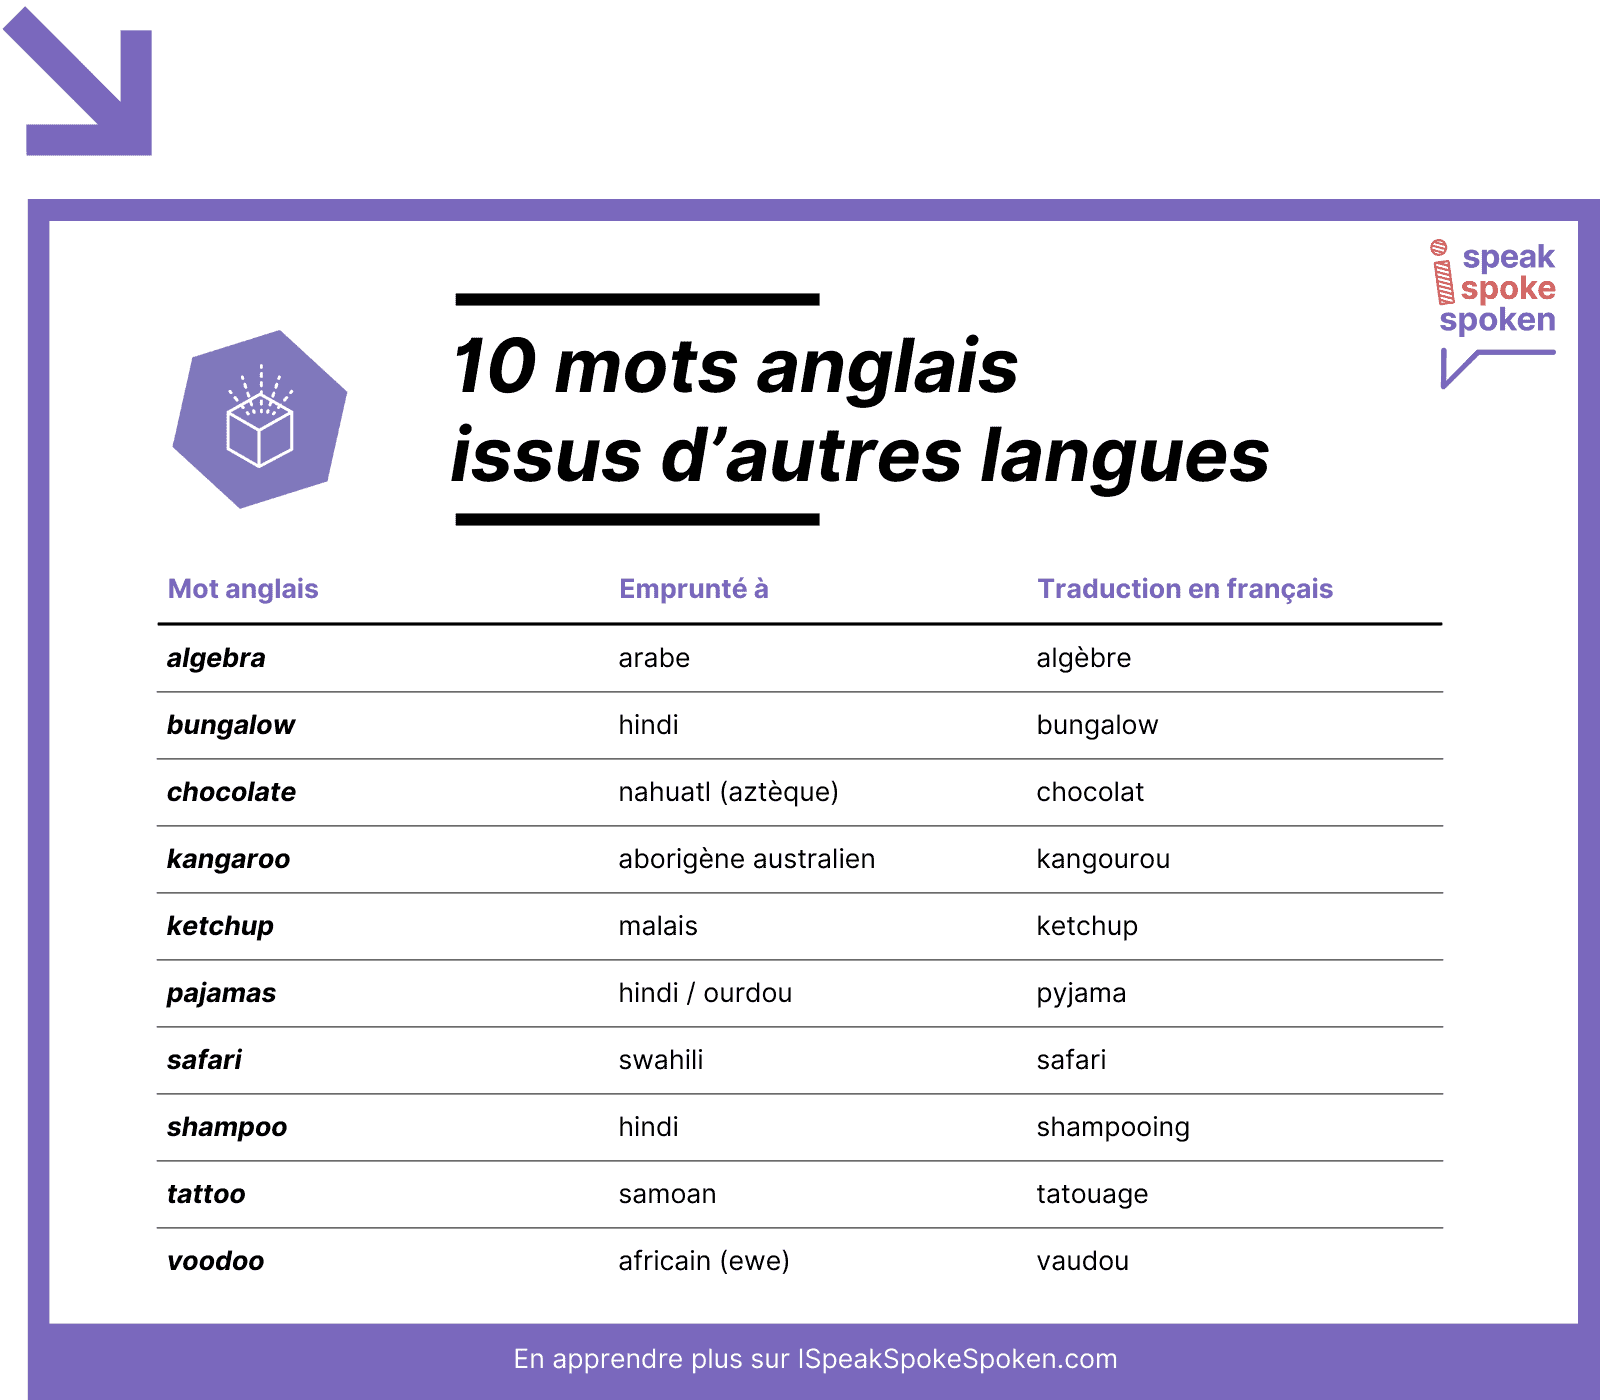 10 mots anglais issus d’autres langues